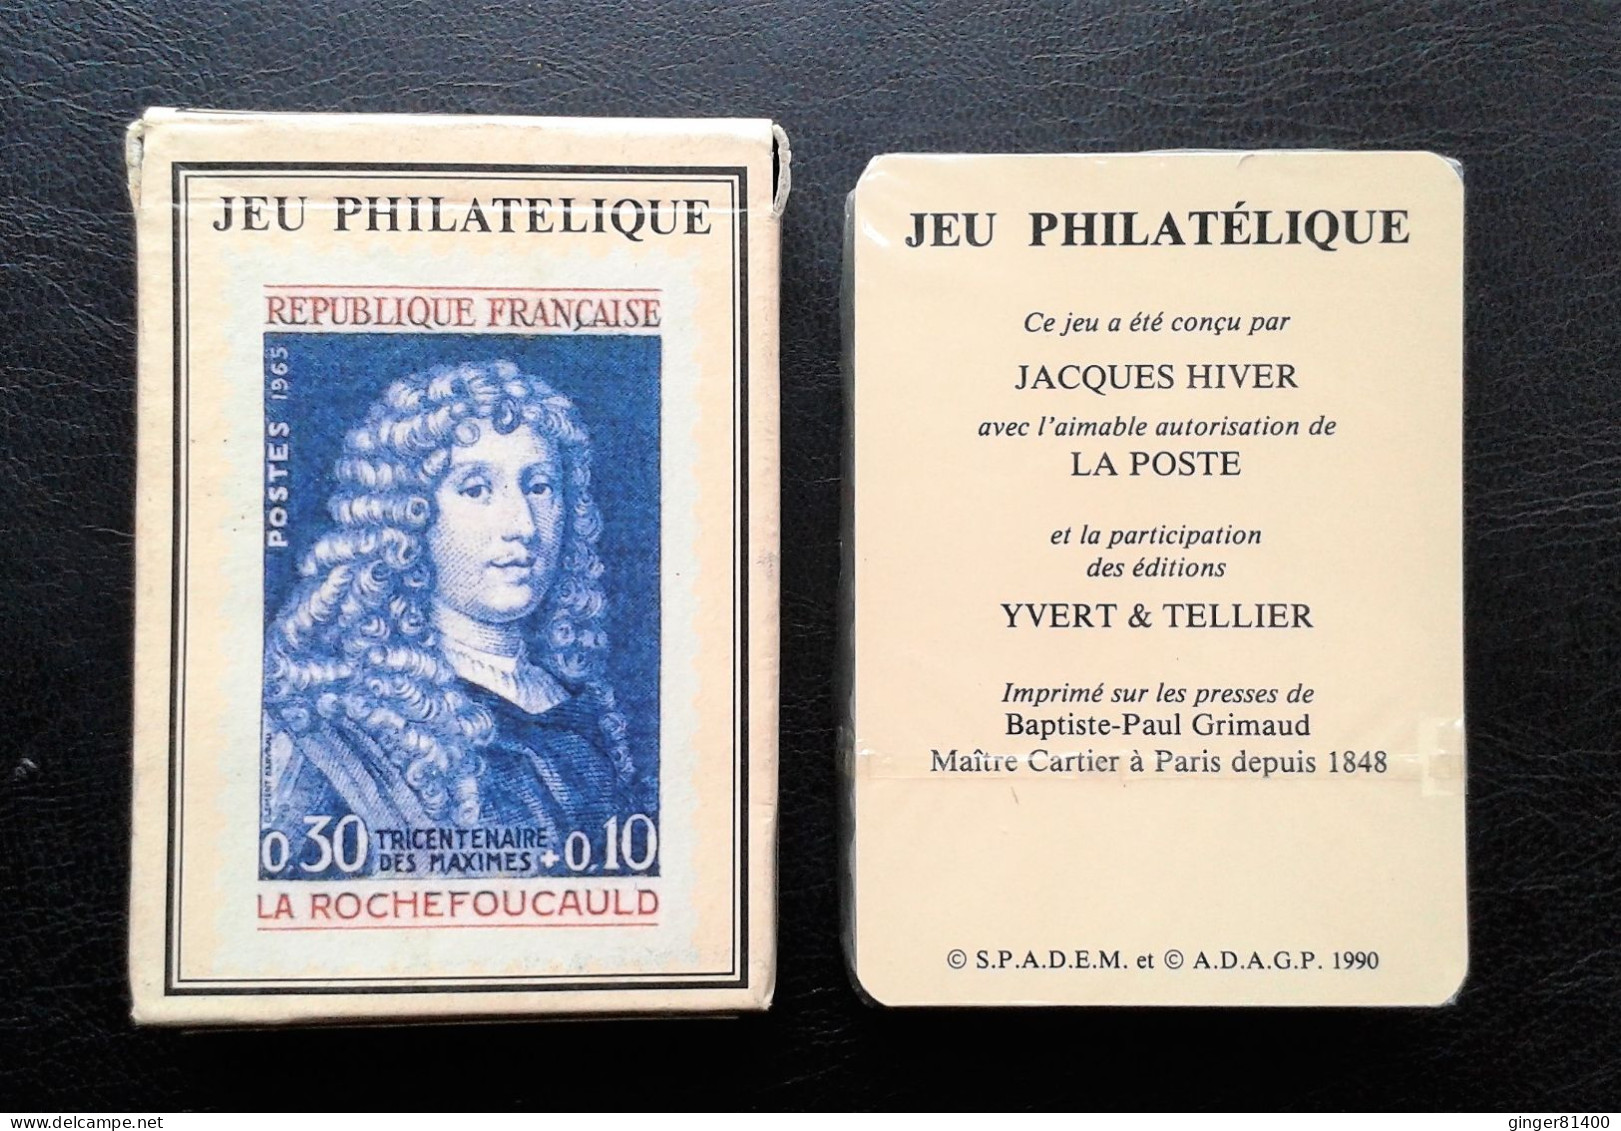 Collection ! Jeu Complet 54 Cartes "Jeu Philatélique" (GRIMAUD) De 1990 En Très Bon état. Voir Photos - Cartes à Jouer Classiques